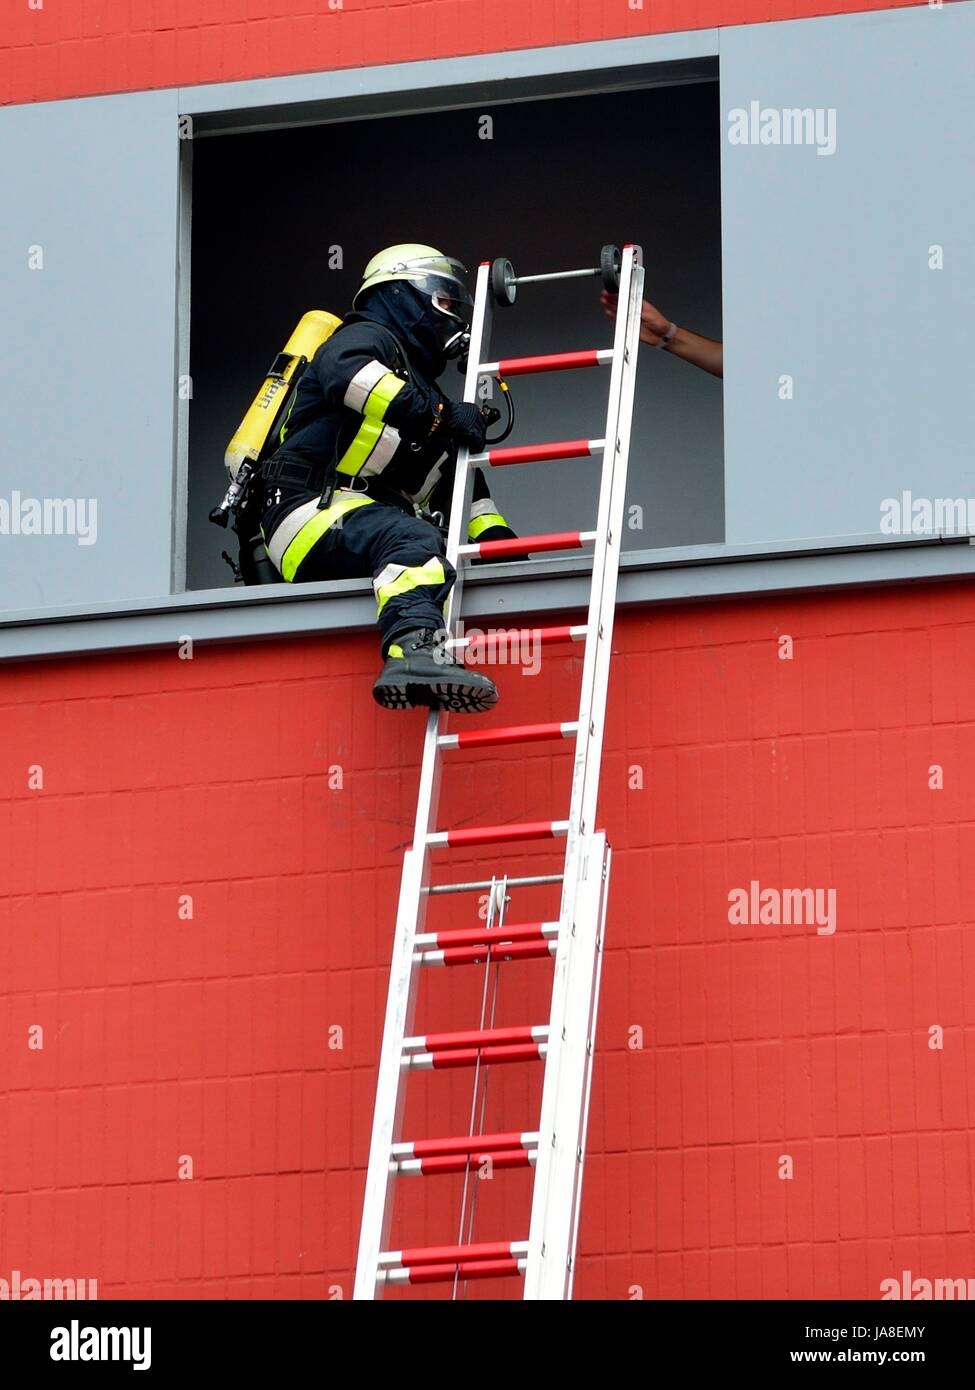 Feuerwehr: Retten, Bergen, Schützen Feuerwehrmann mit Leiter beim einsteigen in eine Fensteröffnung zur Rettung von Menschen Stock Photo